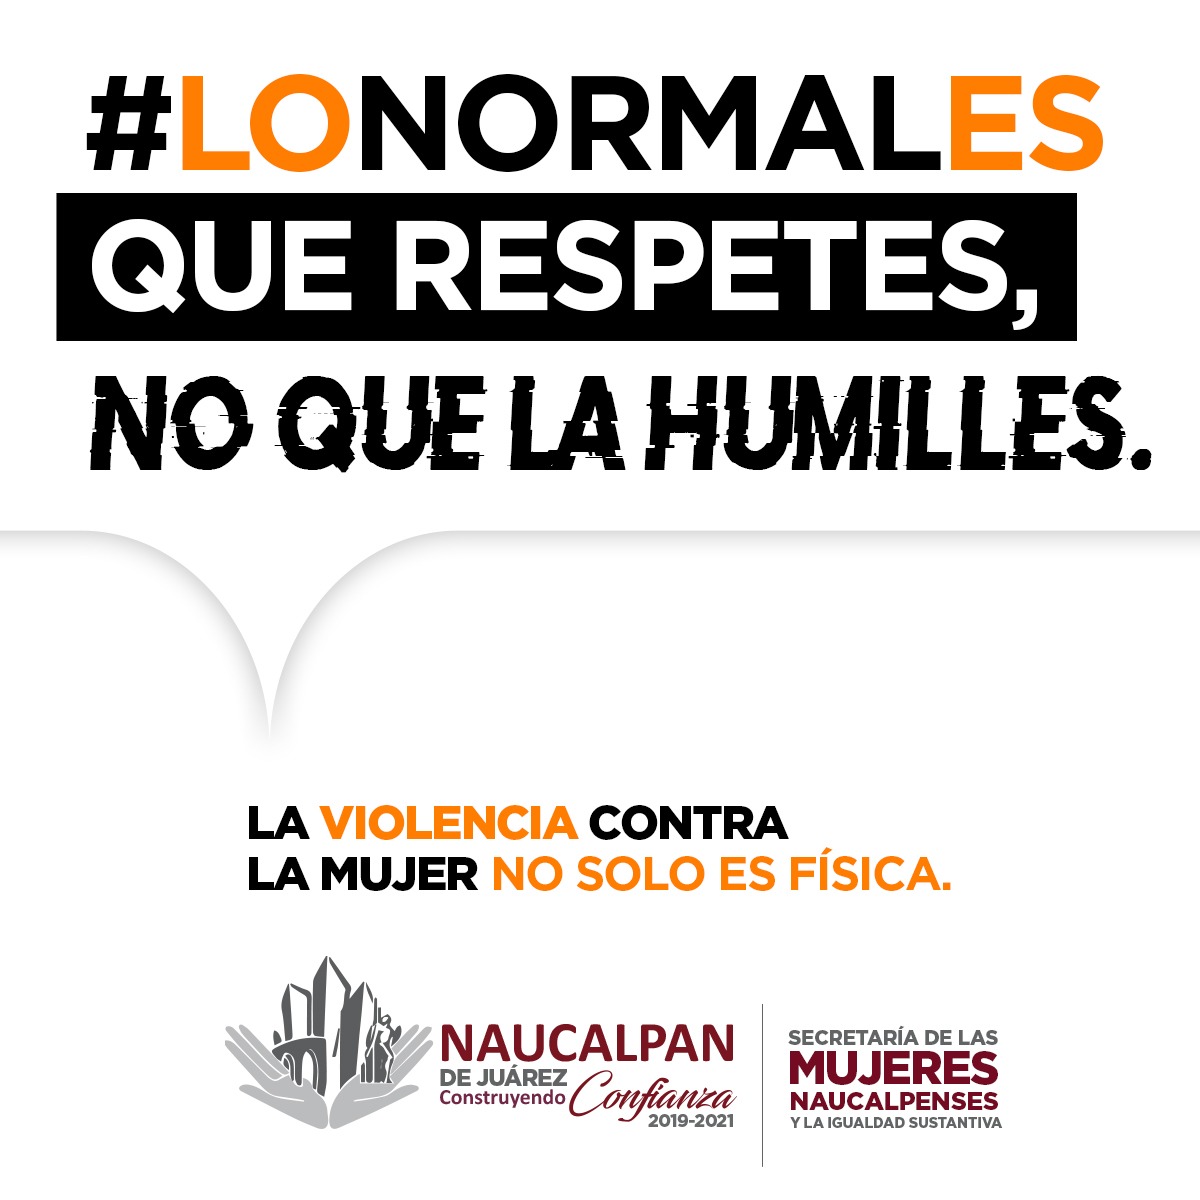 #LoNormalEs: la campaña contra la violencia hacia la mujer, lanzada en Naucalpan #regionmx